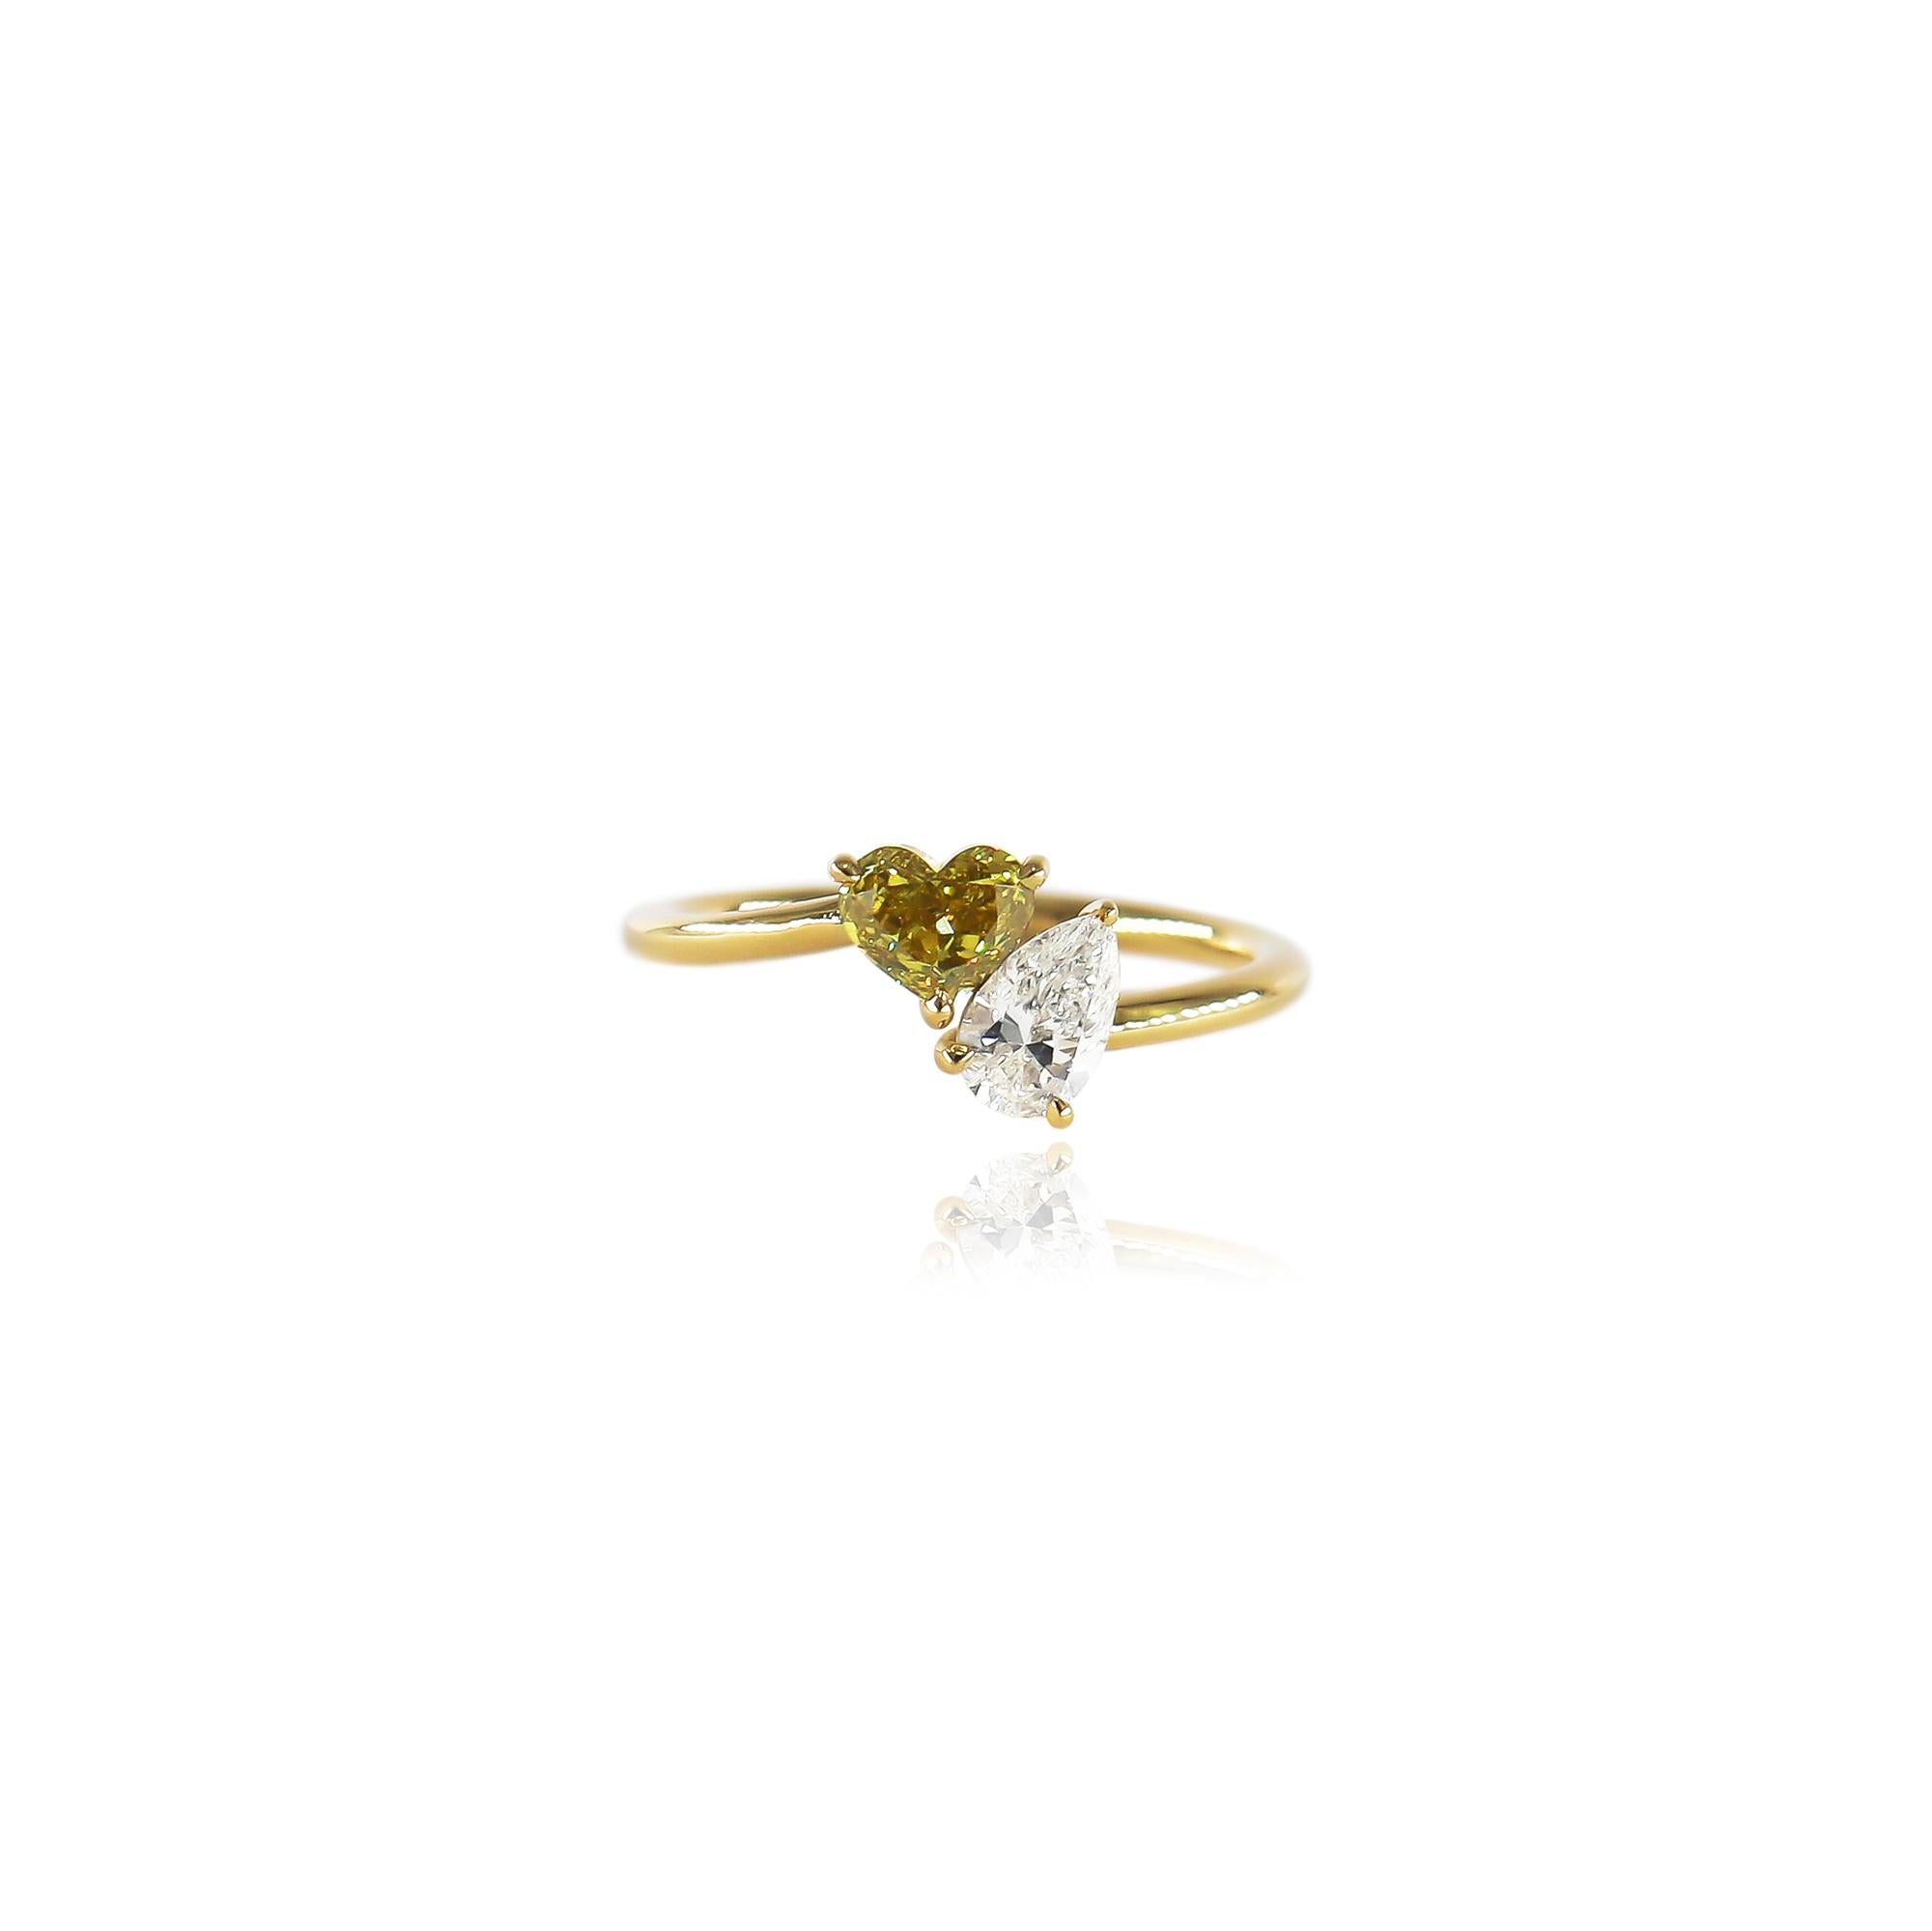 Dieser süße Ring aus der Werkstatt von J. Birnbach besteht aus einem 0,51-karätigen, herzförmigen Diamanten von fancy grünlich-gelber Farbe und SI1-Klarheit, gepaart mit einem 0,40-karätigen, birnenförmigen Diamanten von F-Farbe und SI1-Klarheit.